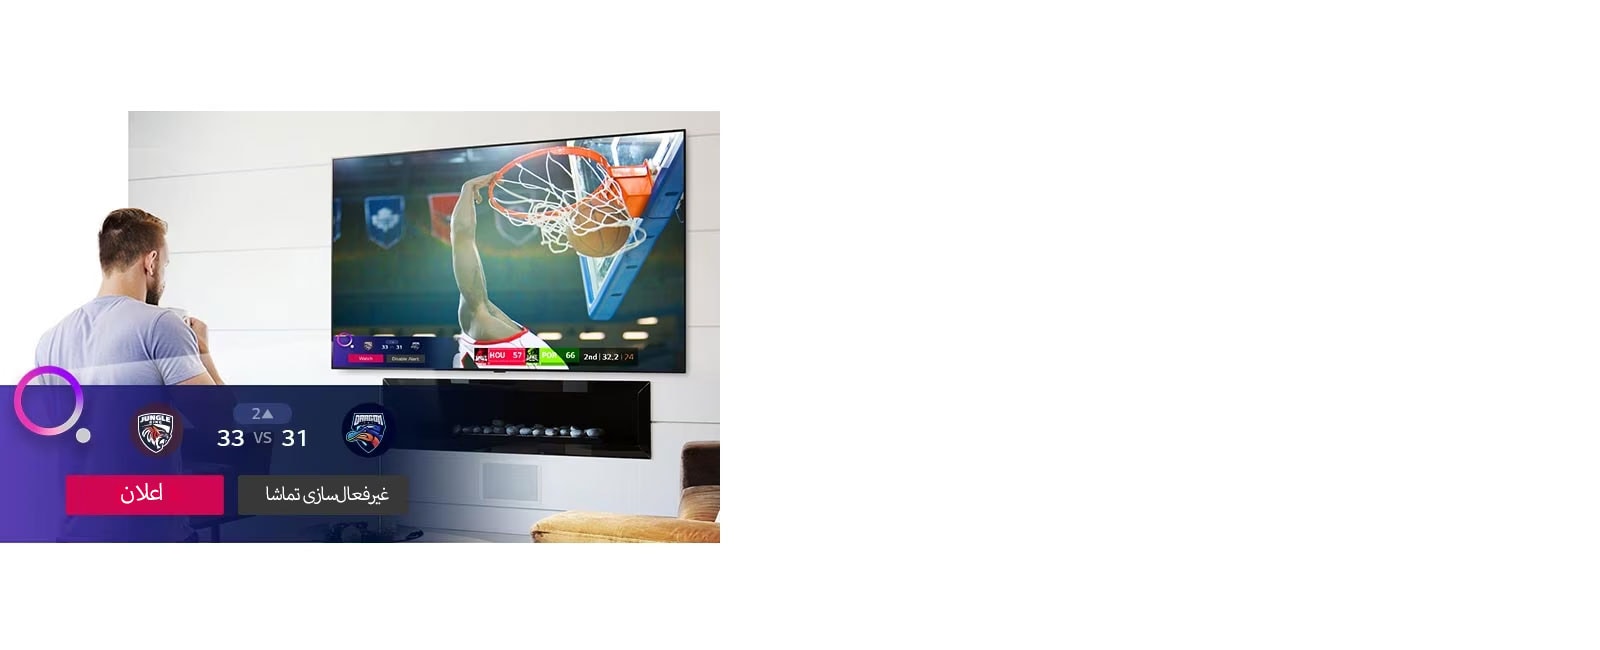 صفحه تلویزیون صحنه‌ای از بازی بسکتبال را با اعلان ورزشی نشان می‌دهد.